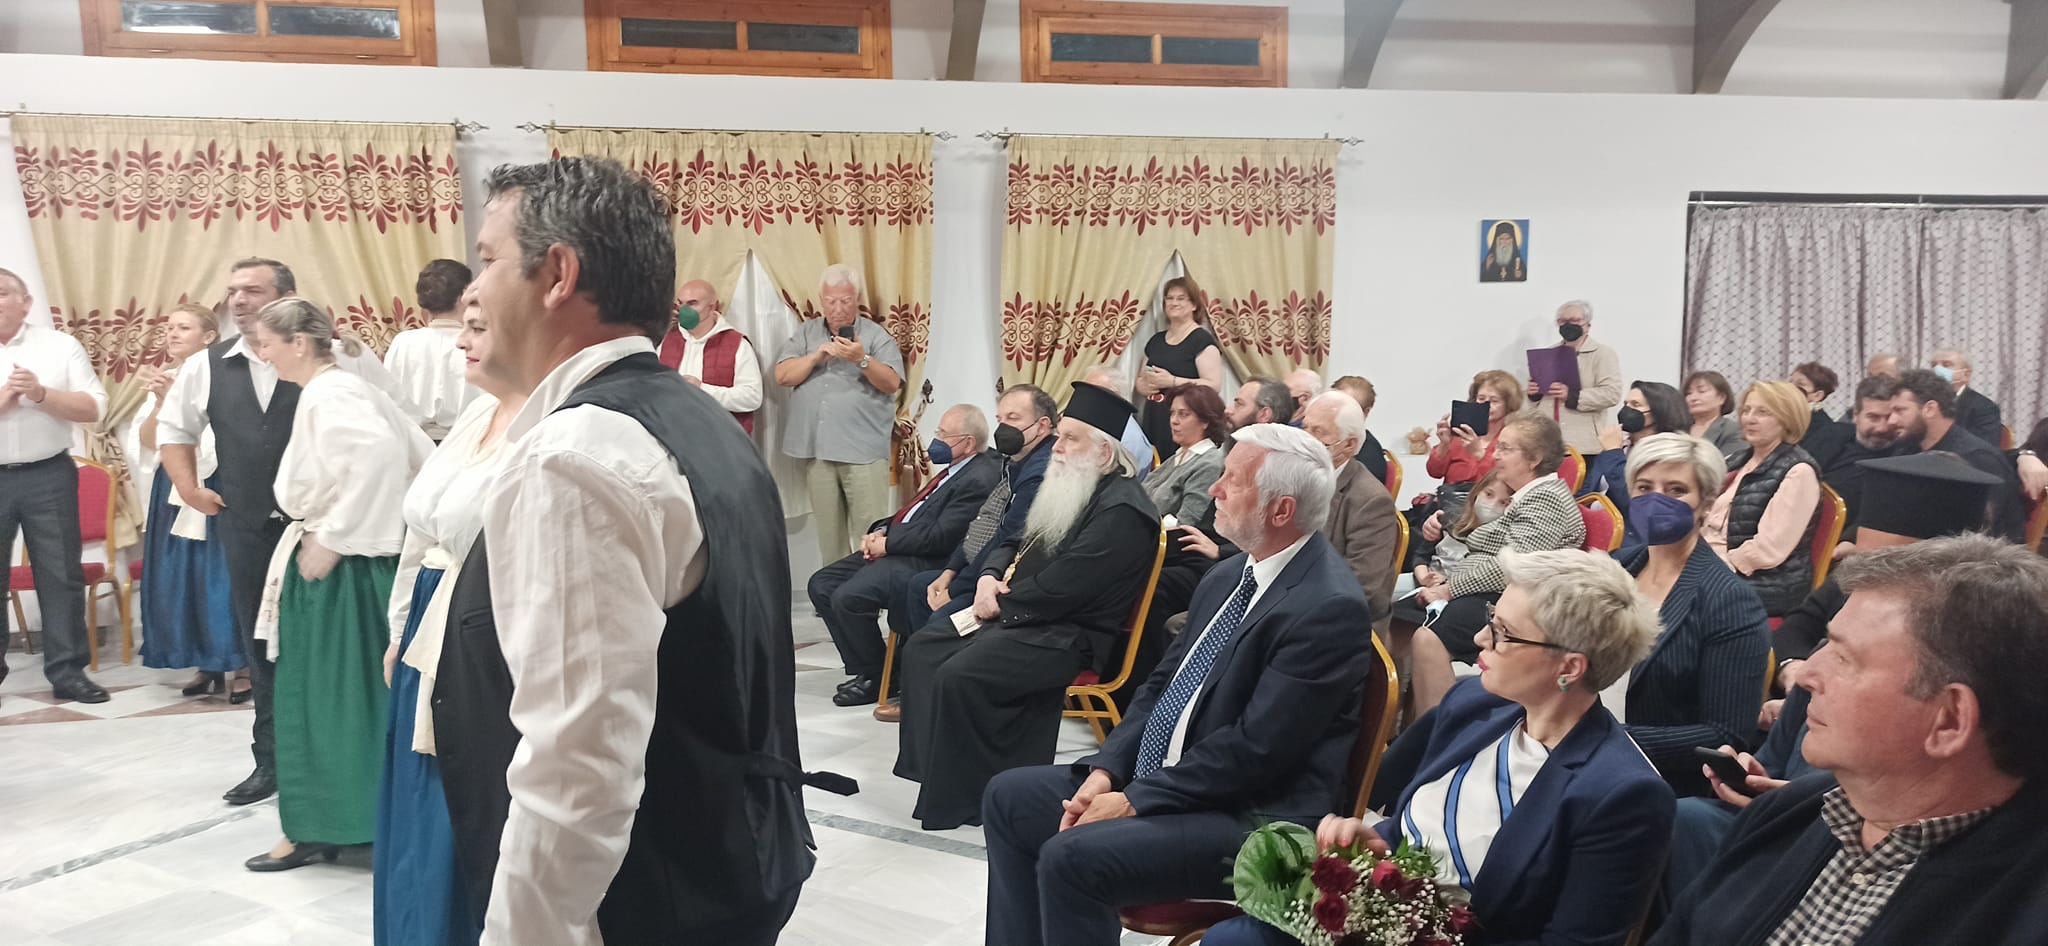 Ναύπλιο: Εκδήλωση για τα 100 χρόνια από τη Μικρασιατική καταστροφή στον Ιερό Ναό Ευαγγελιστρίας